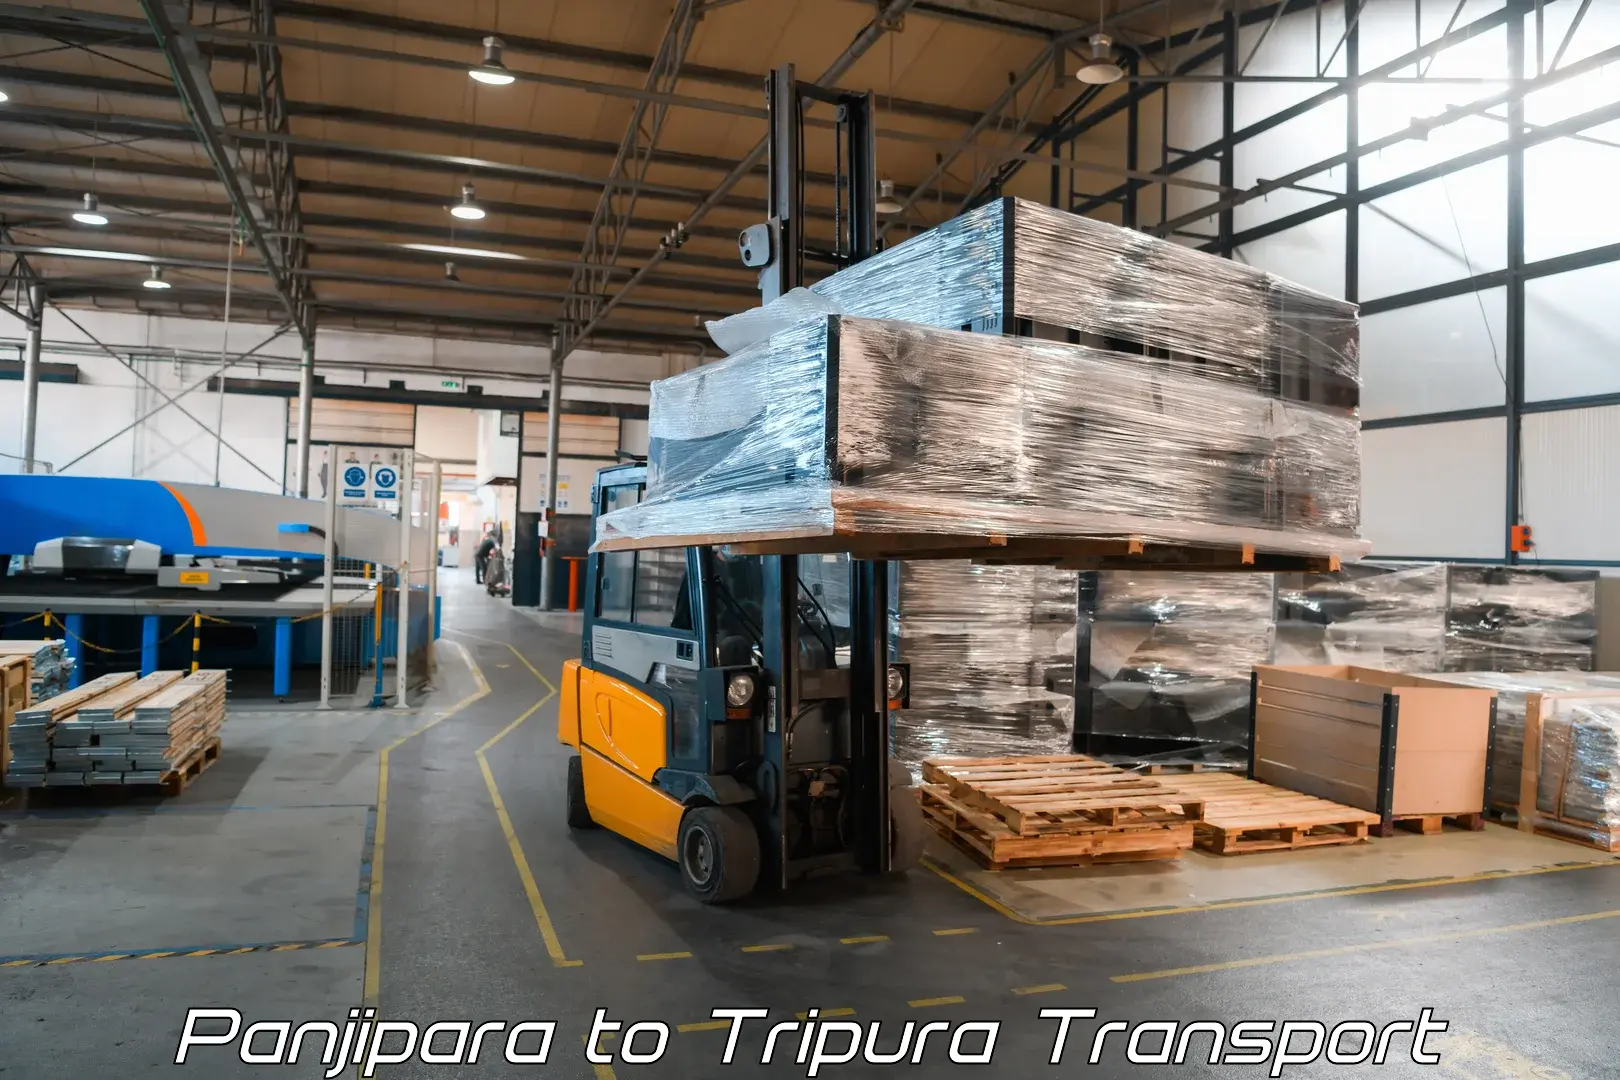 Online transport service Panjipara to Udaipur Tripura